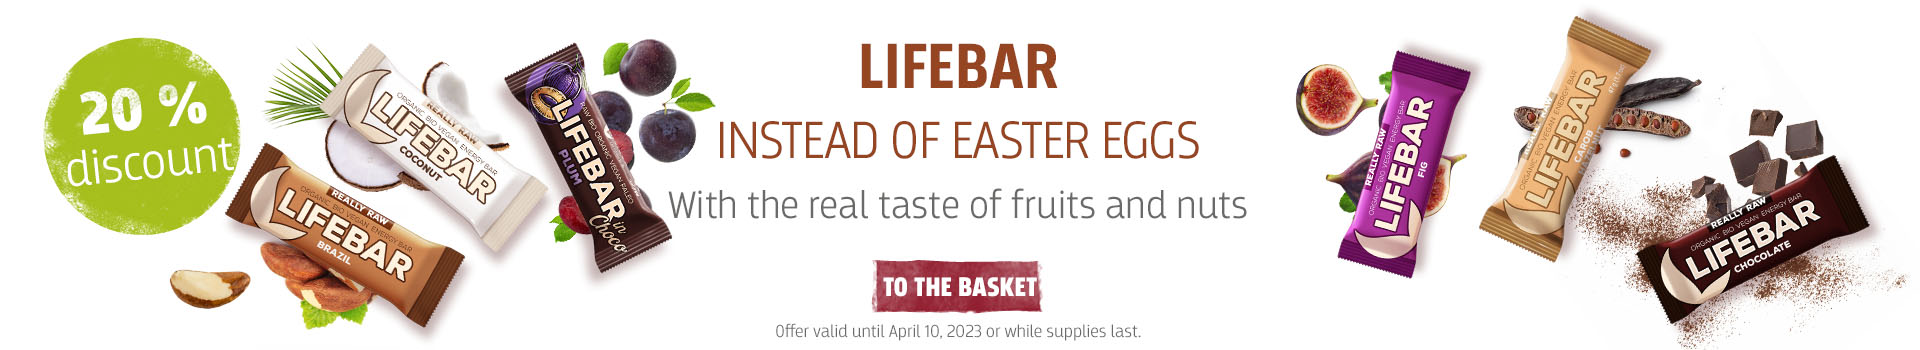 Lifebar Easter